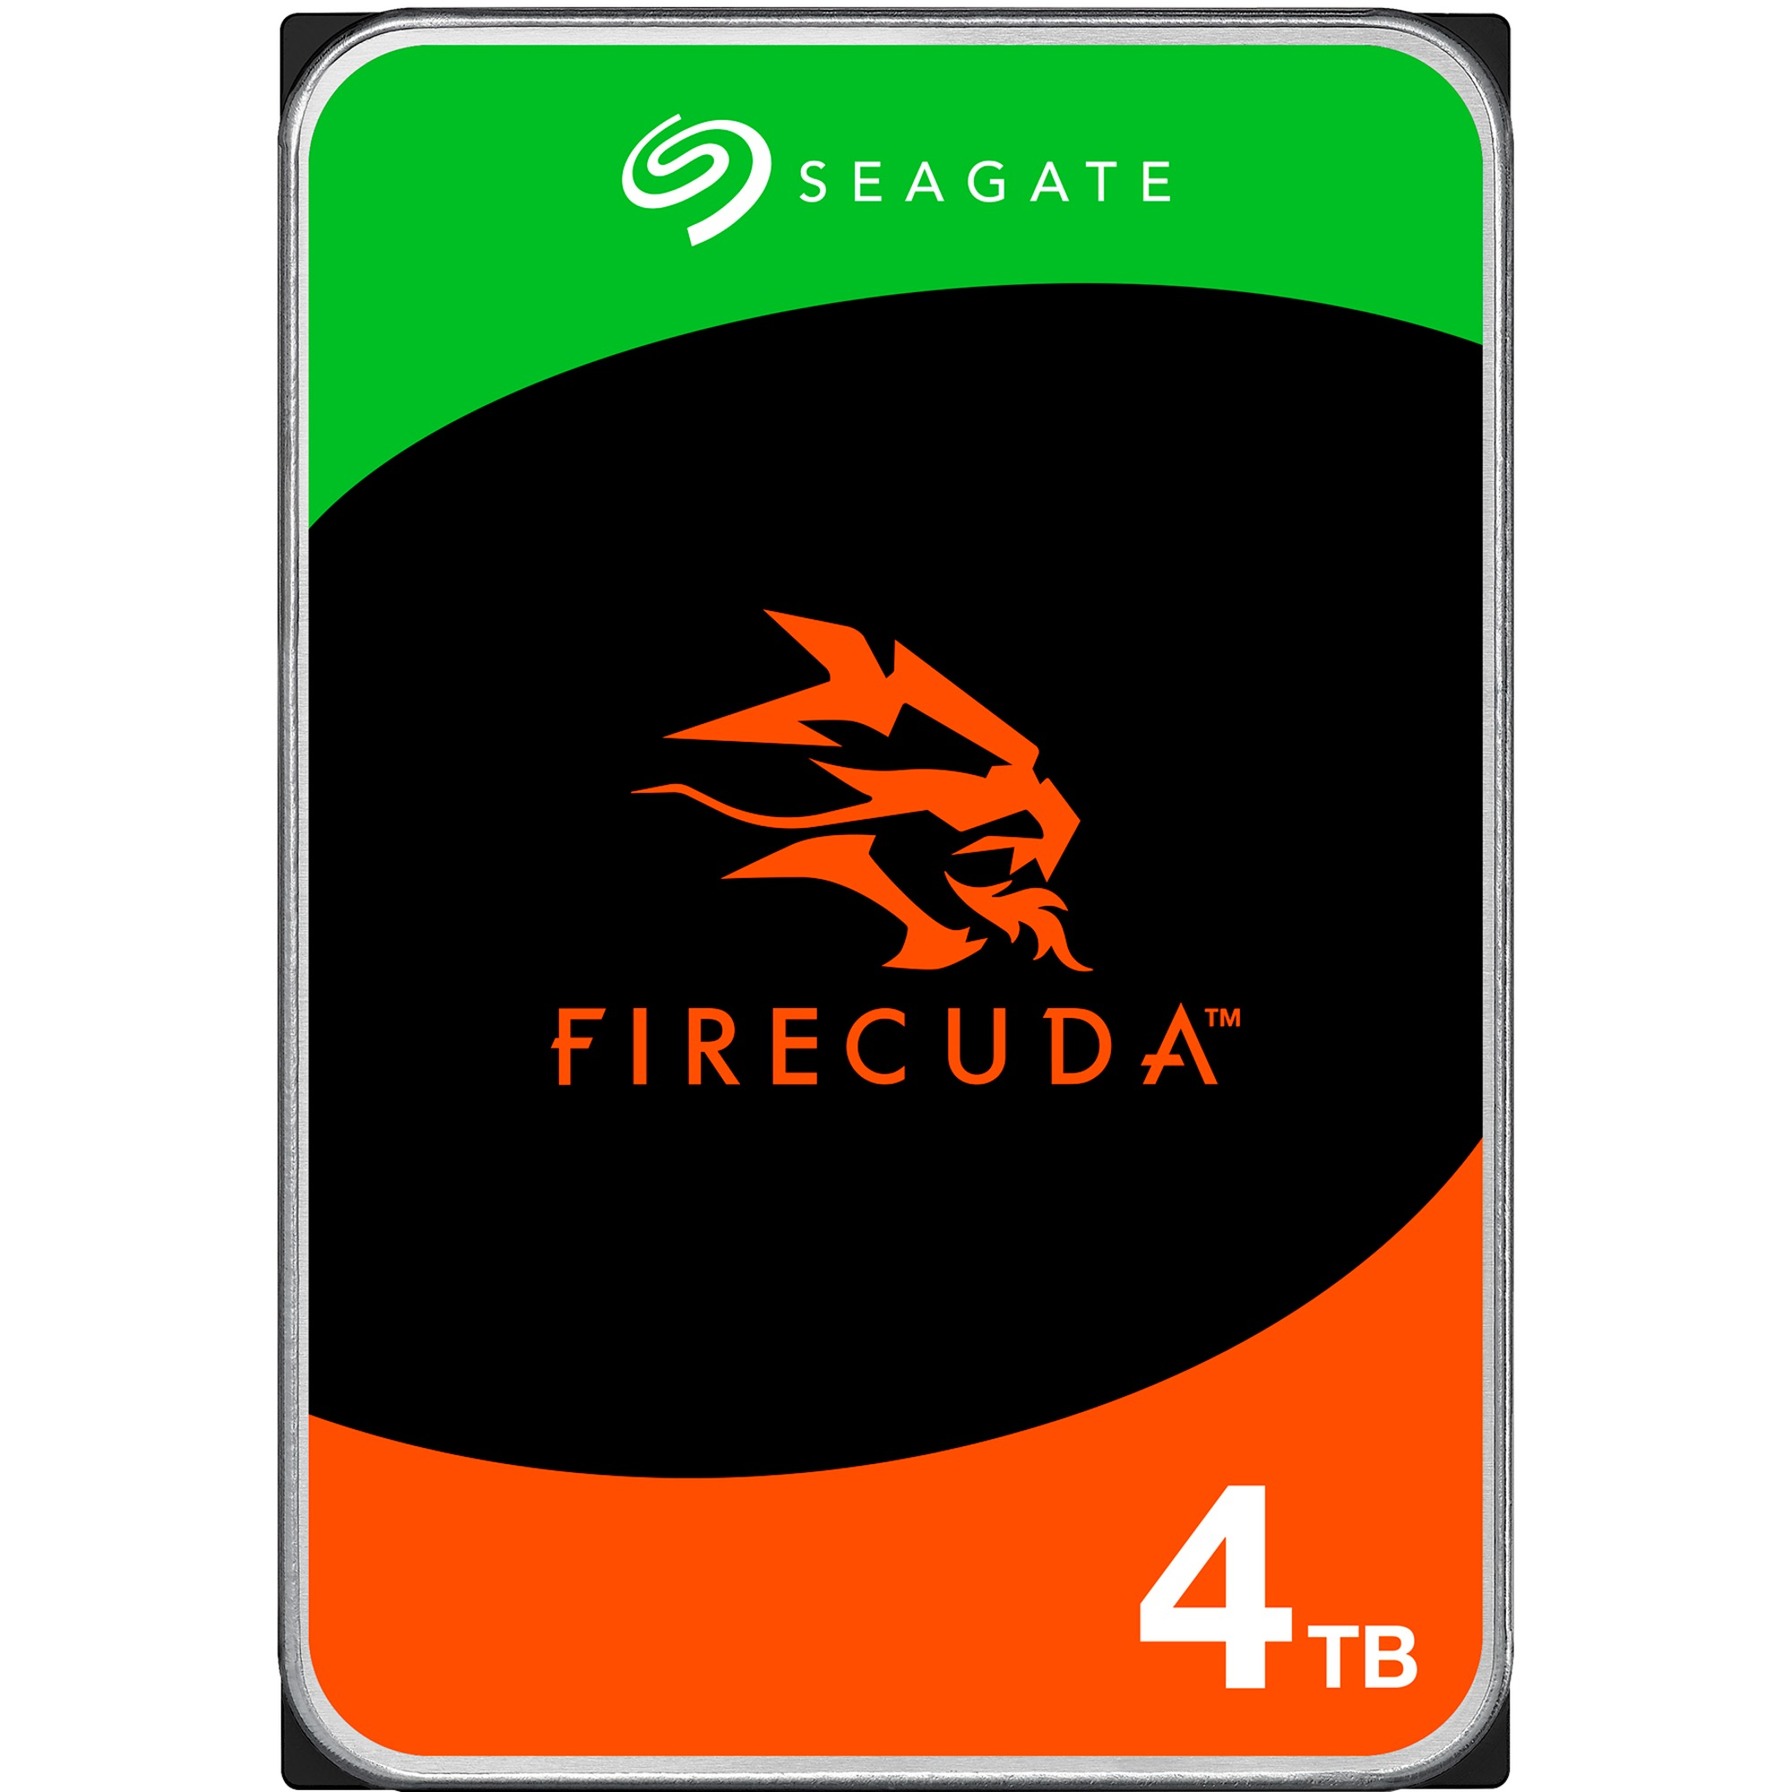 FireCuda HDD 4 TB, Festplatte von Seagate